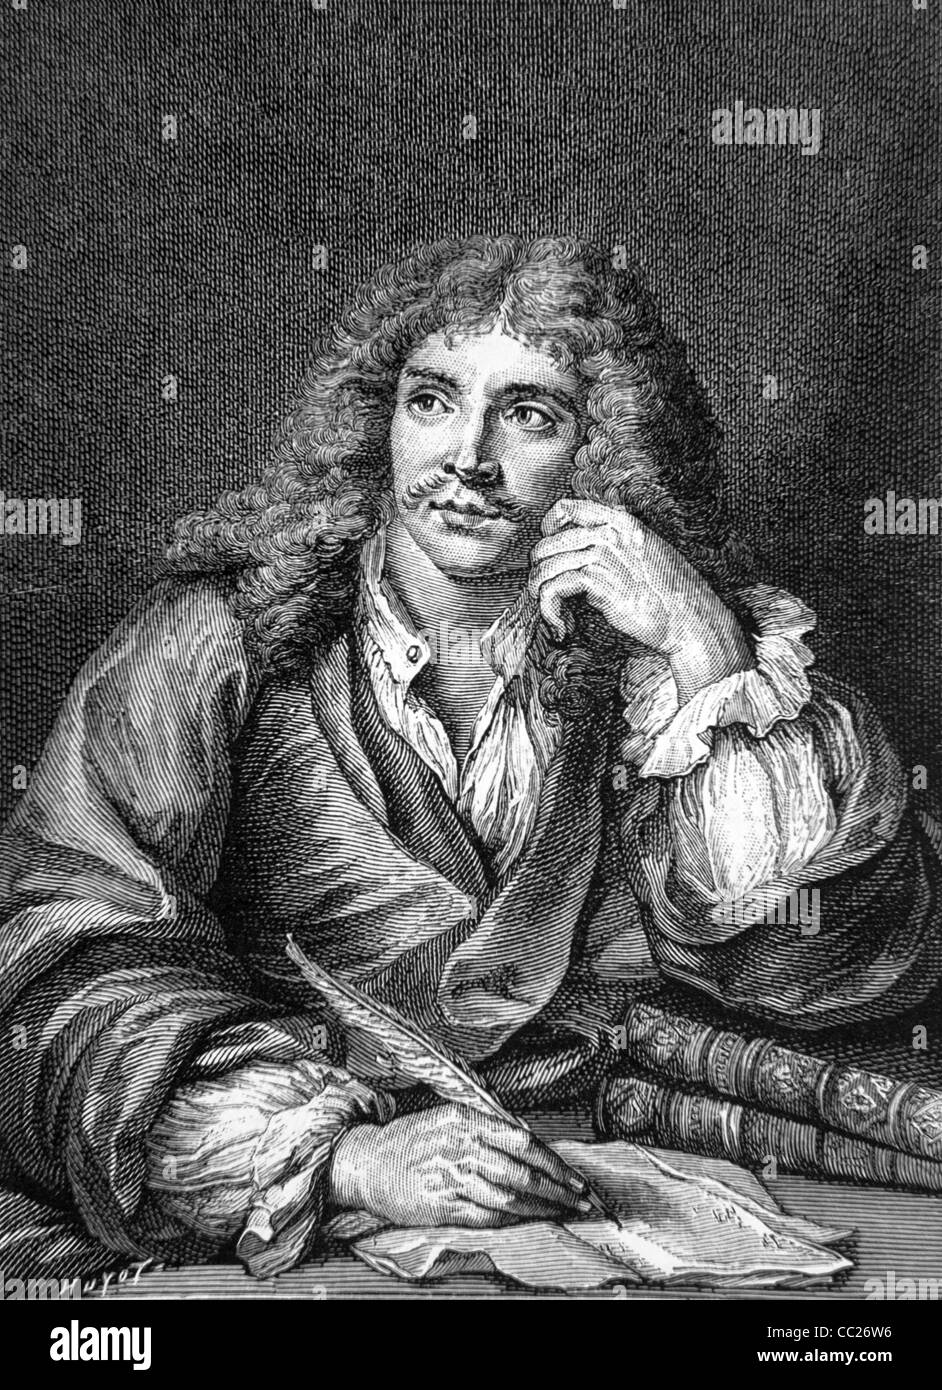 Portrait de Molière, Jean-Baptiste Poquelin de (1622-73) dramaturge et écrivain français écrivant avec Quill Pen. Portrait gravure par Lépicé de peinture par C. Coypel. Banque D'Images